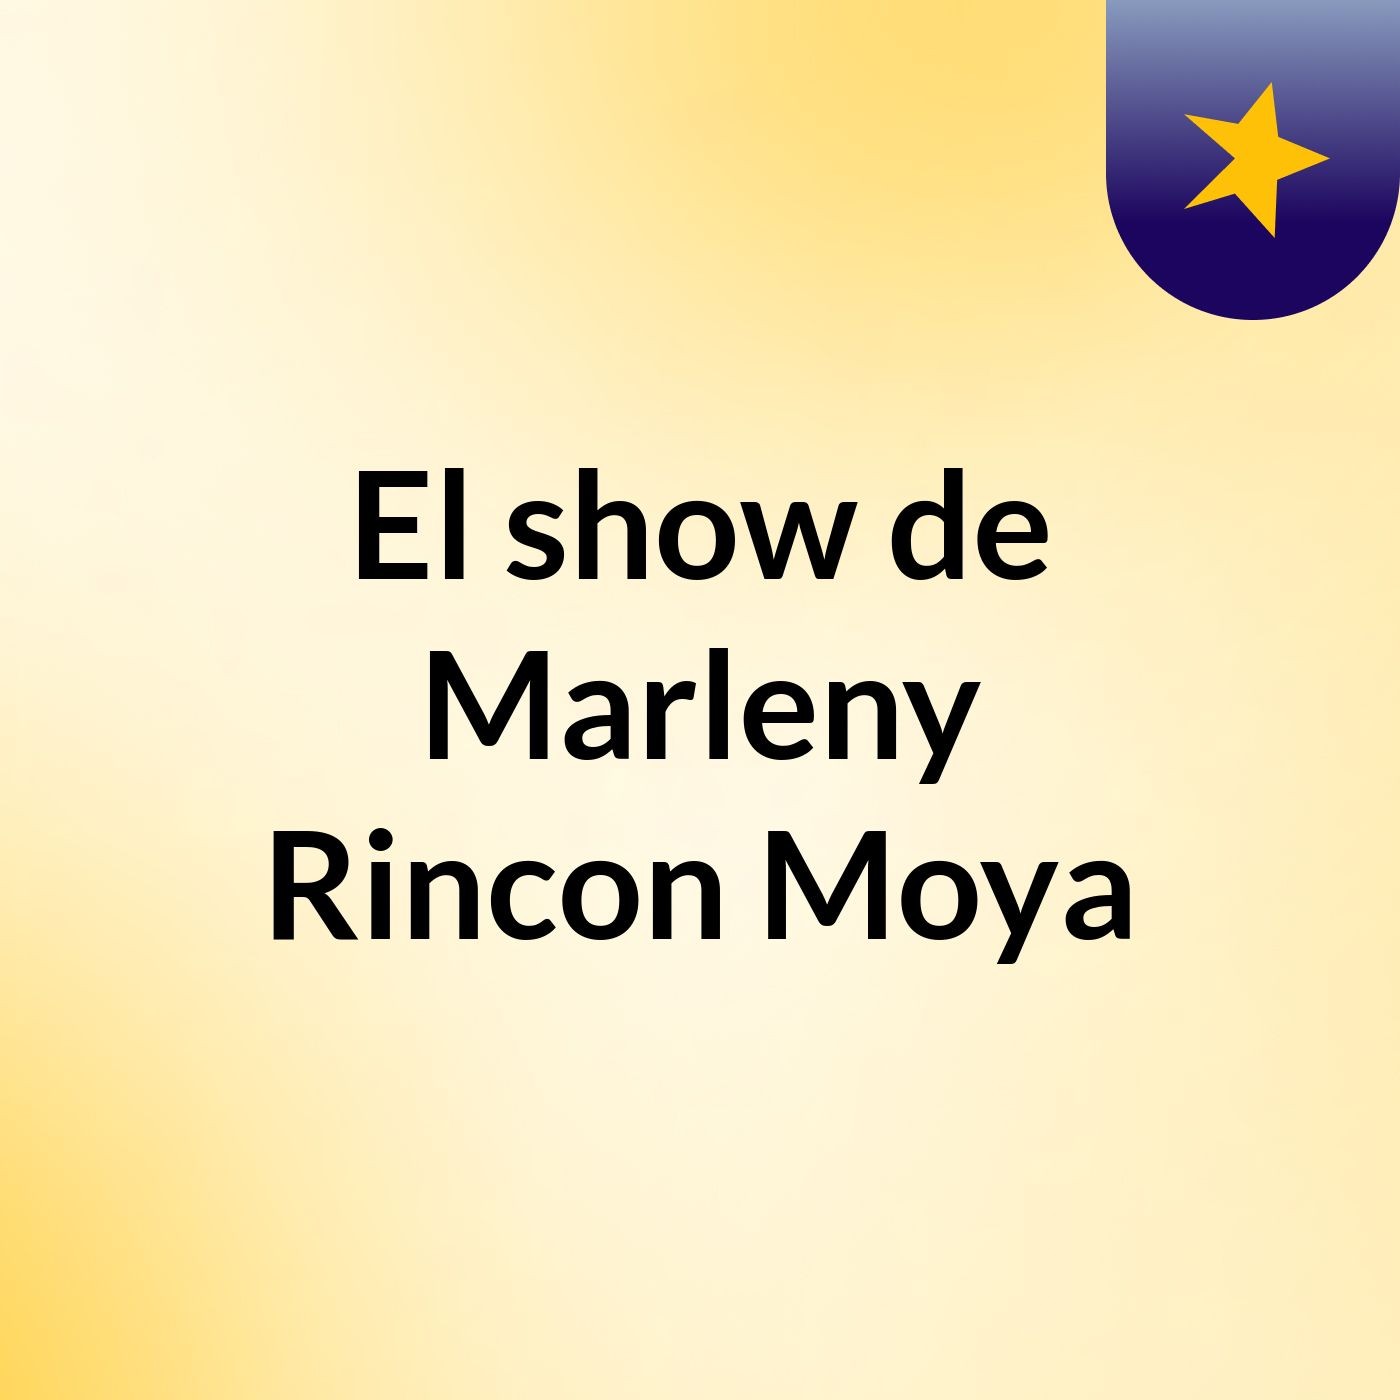 El show de Marleny Rincon Moya